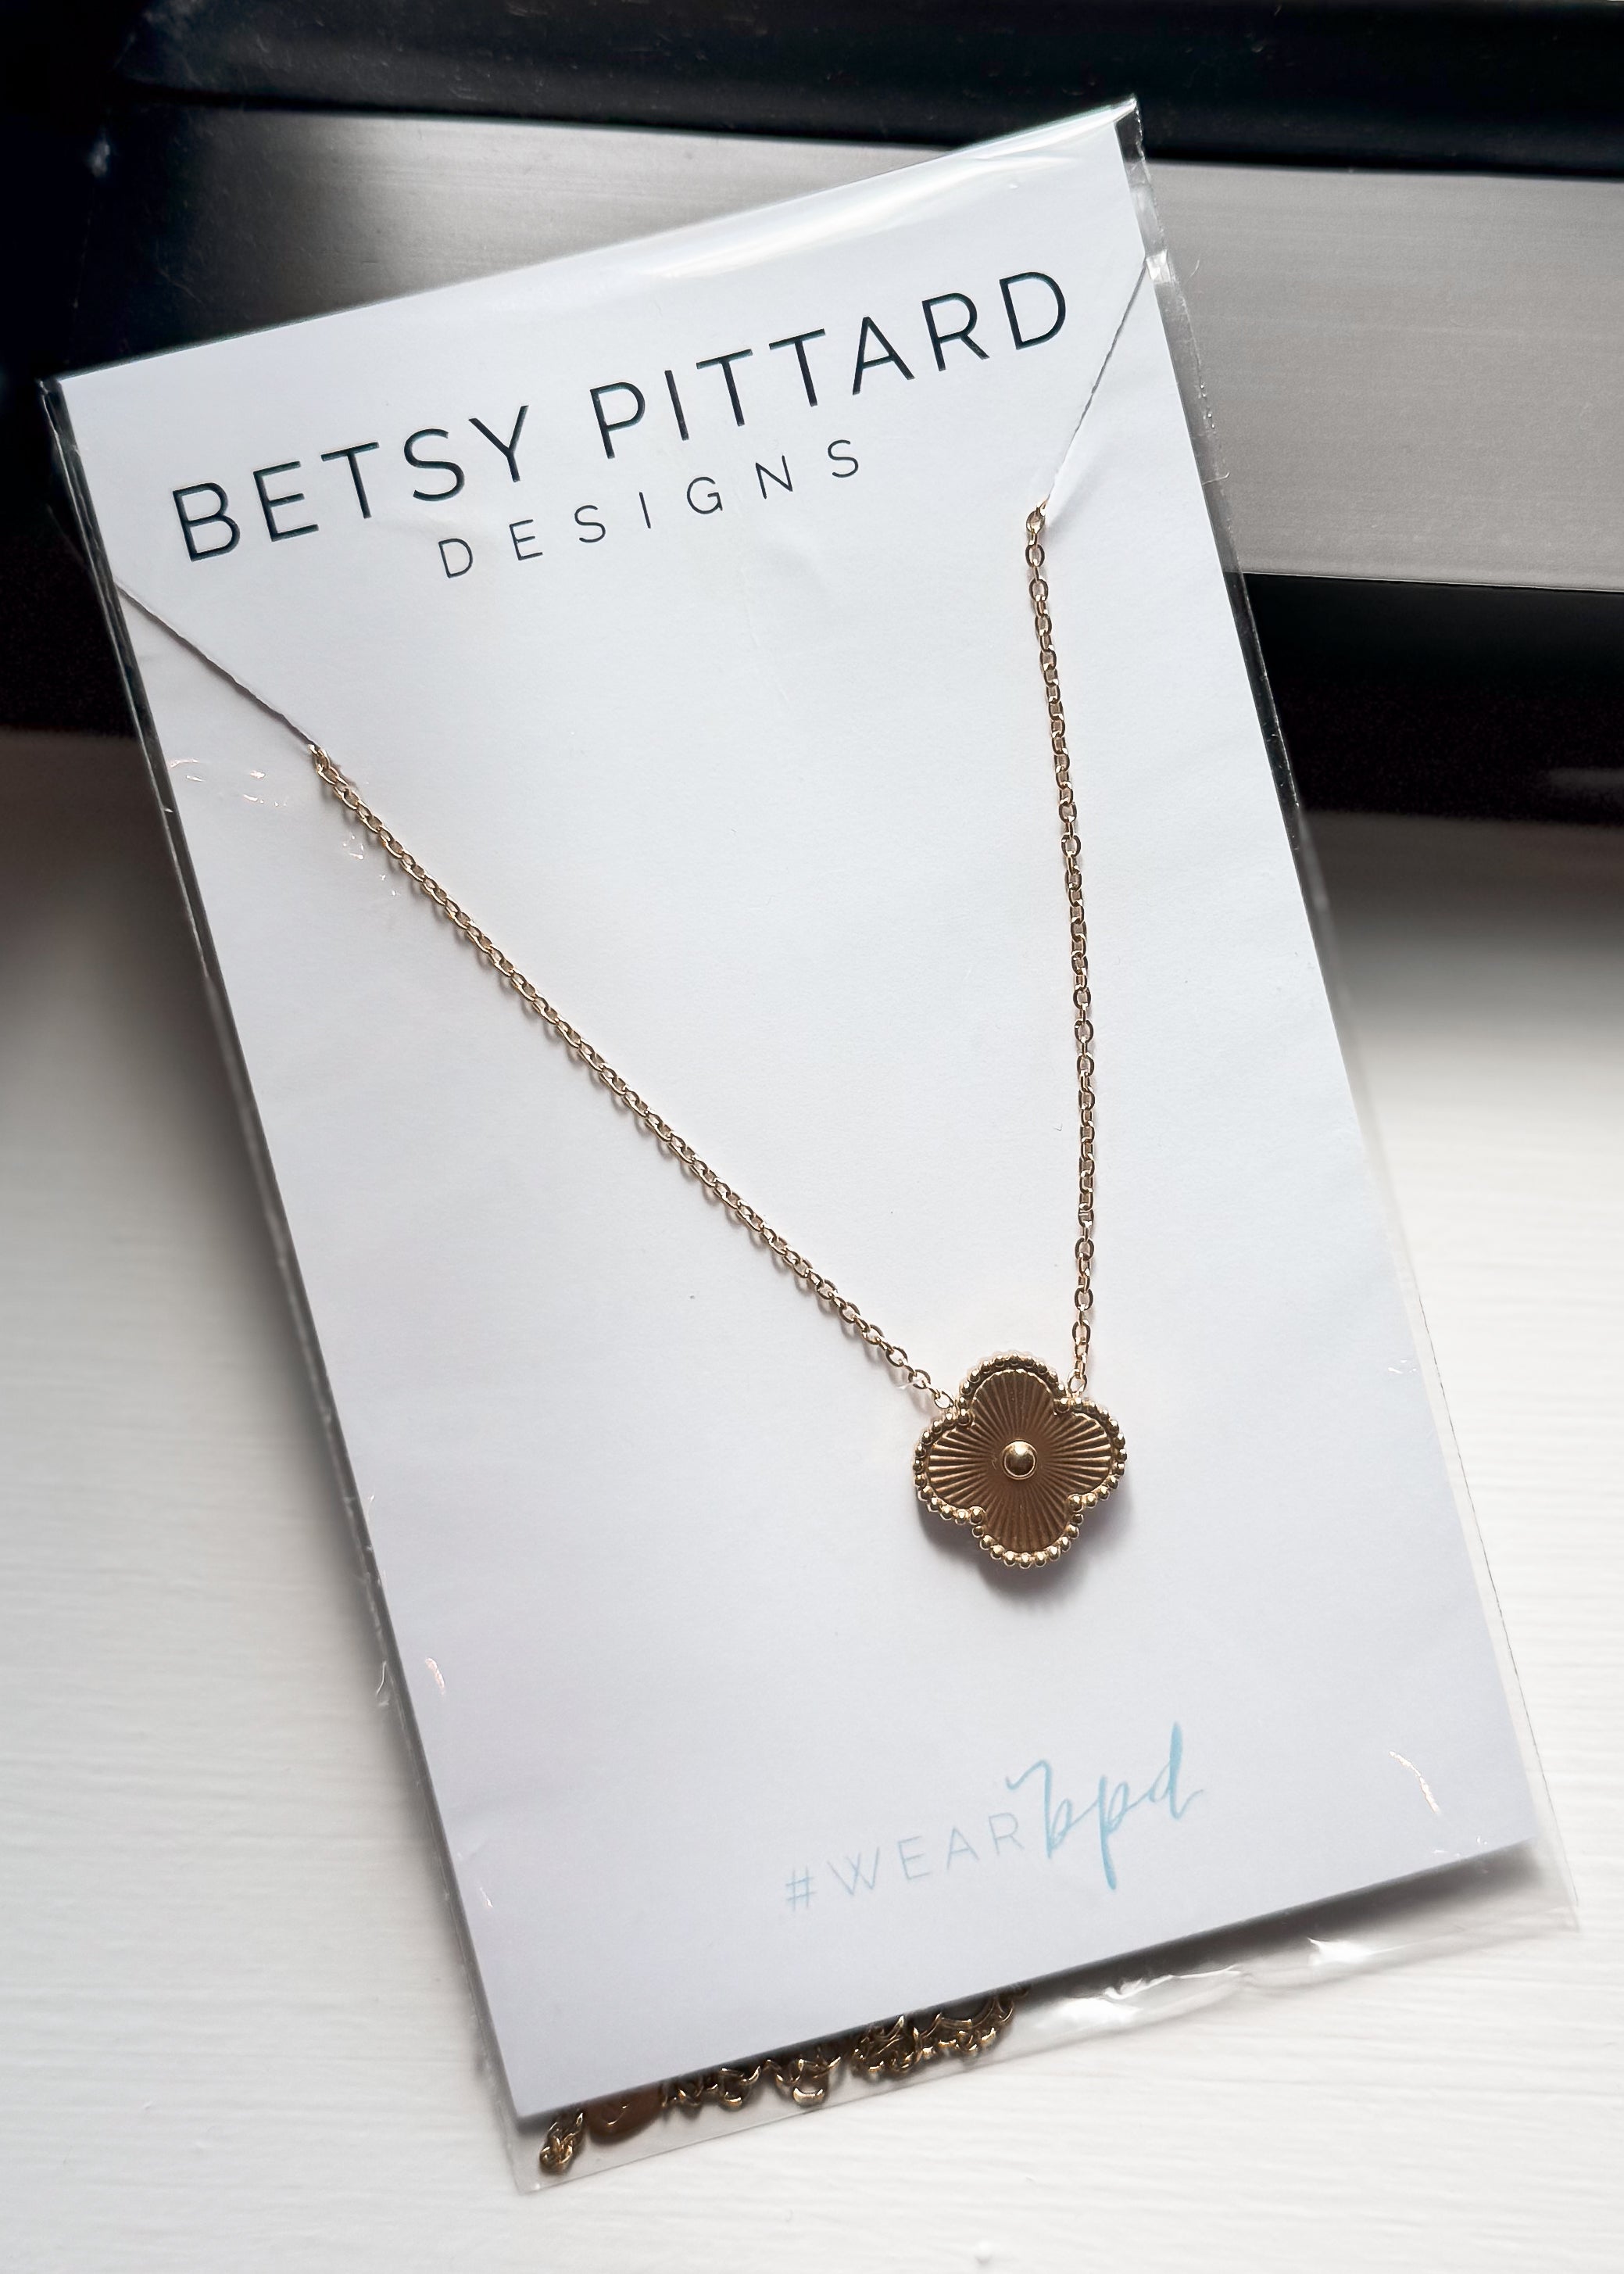 Betsy Pittard Designs: Barnett